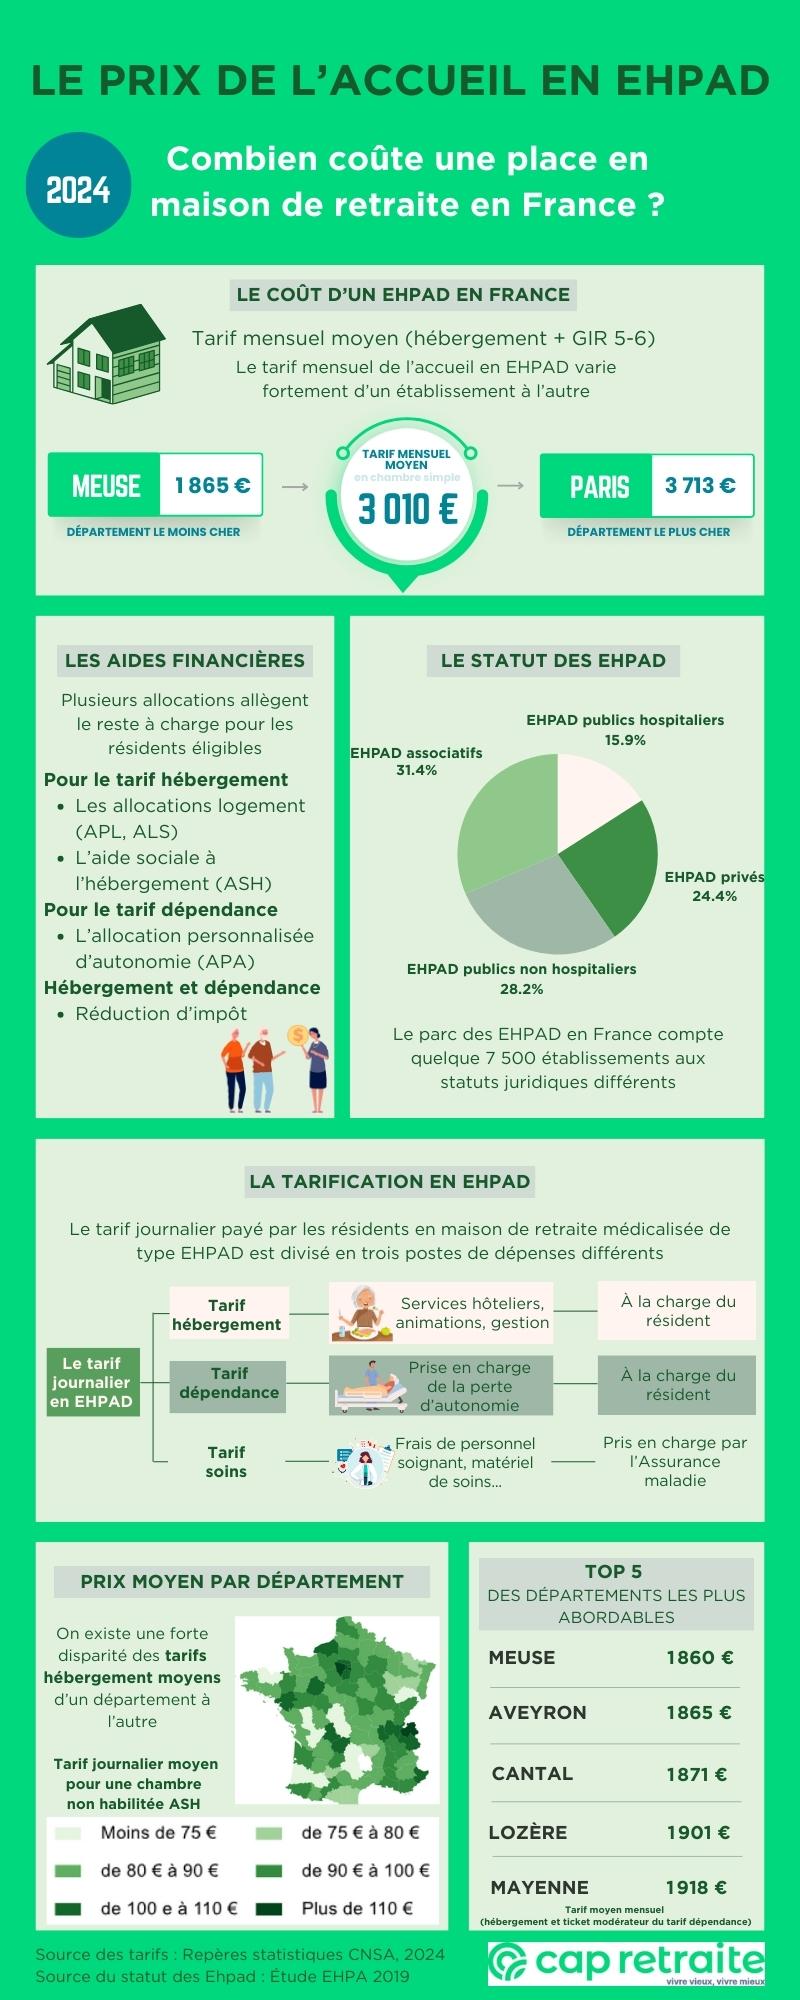 Infographie présentant le prix d'une maison de retraite de type EHPAD en France en 2024